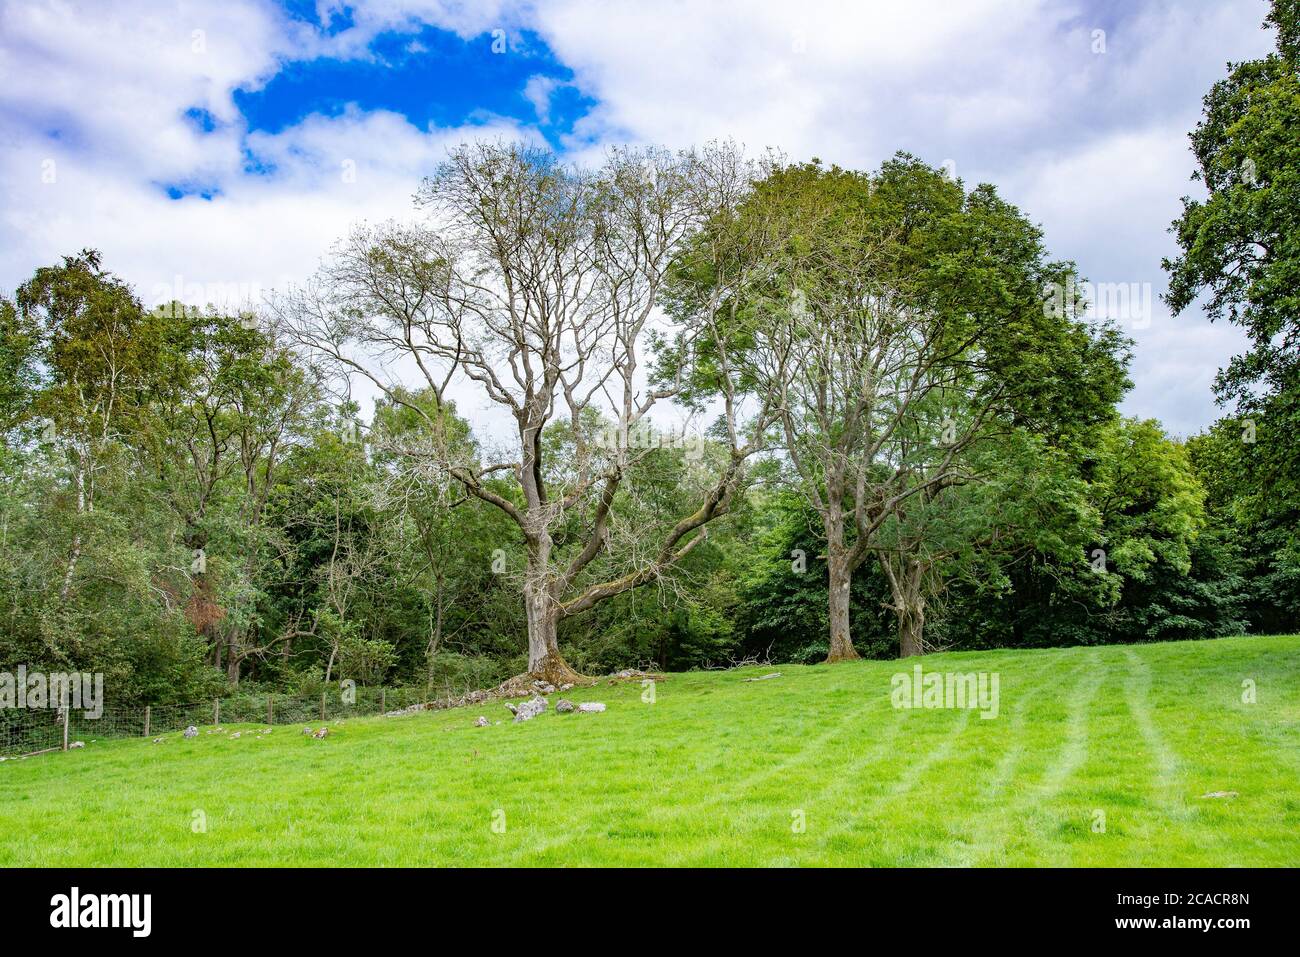 Un peuplement de cendres avec des branches tombées, Yealand Conyers, Lancashire, Royaume-Uni. Celui de gauche semble avoir le dépérissement des cendres, une maladie grave des cendres Banque D'Images